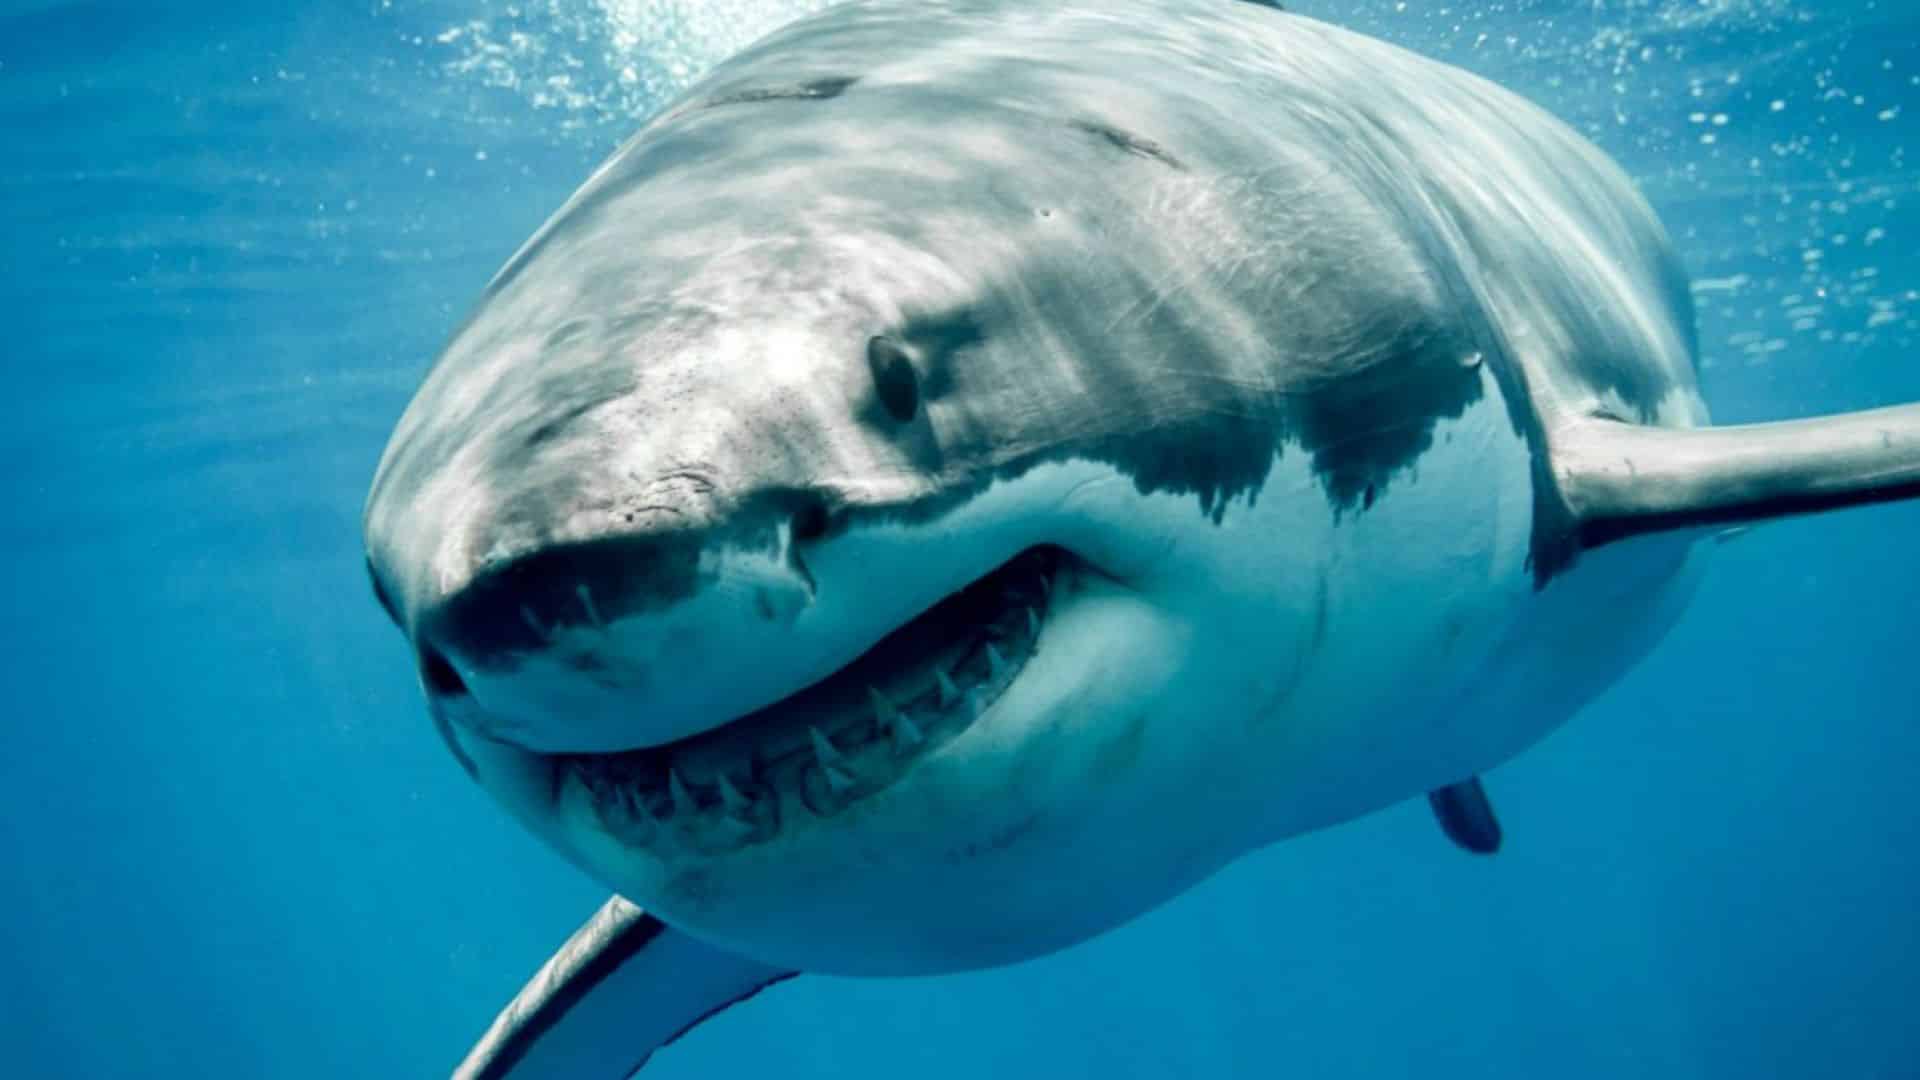 Sbranata da uno squalo mentre nuotava, così è morta una 16enne